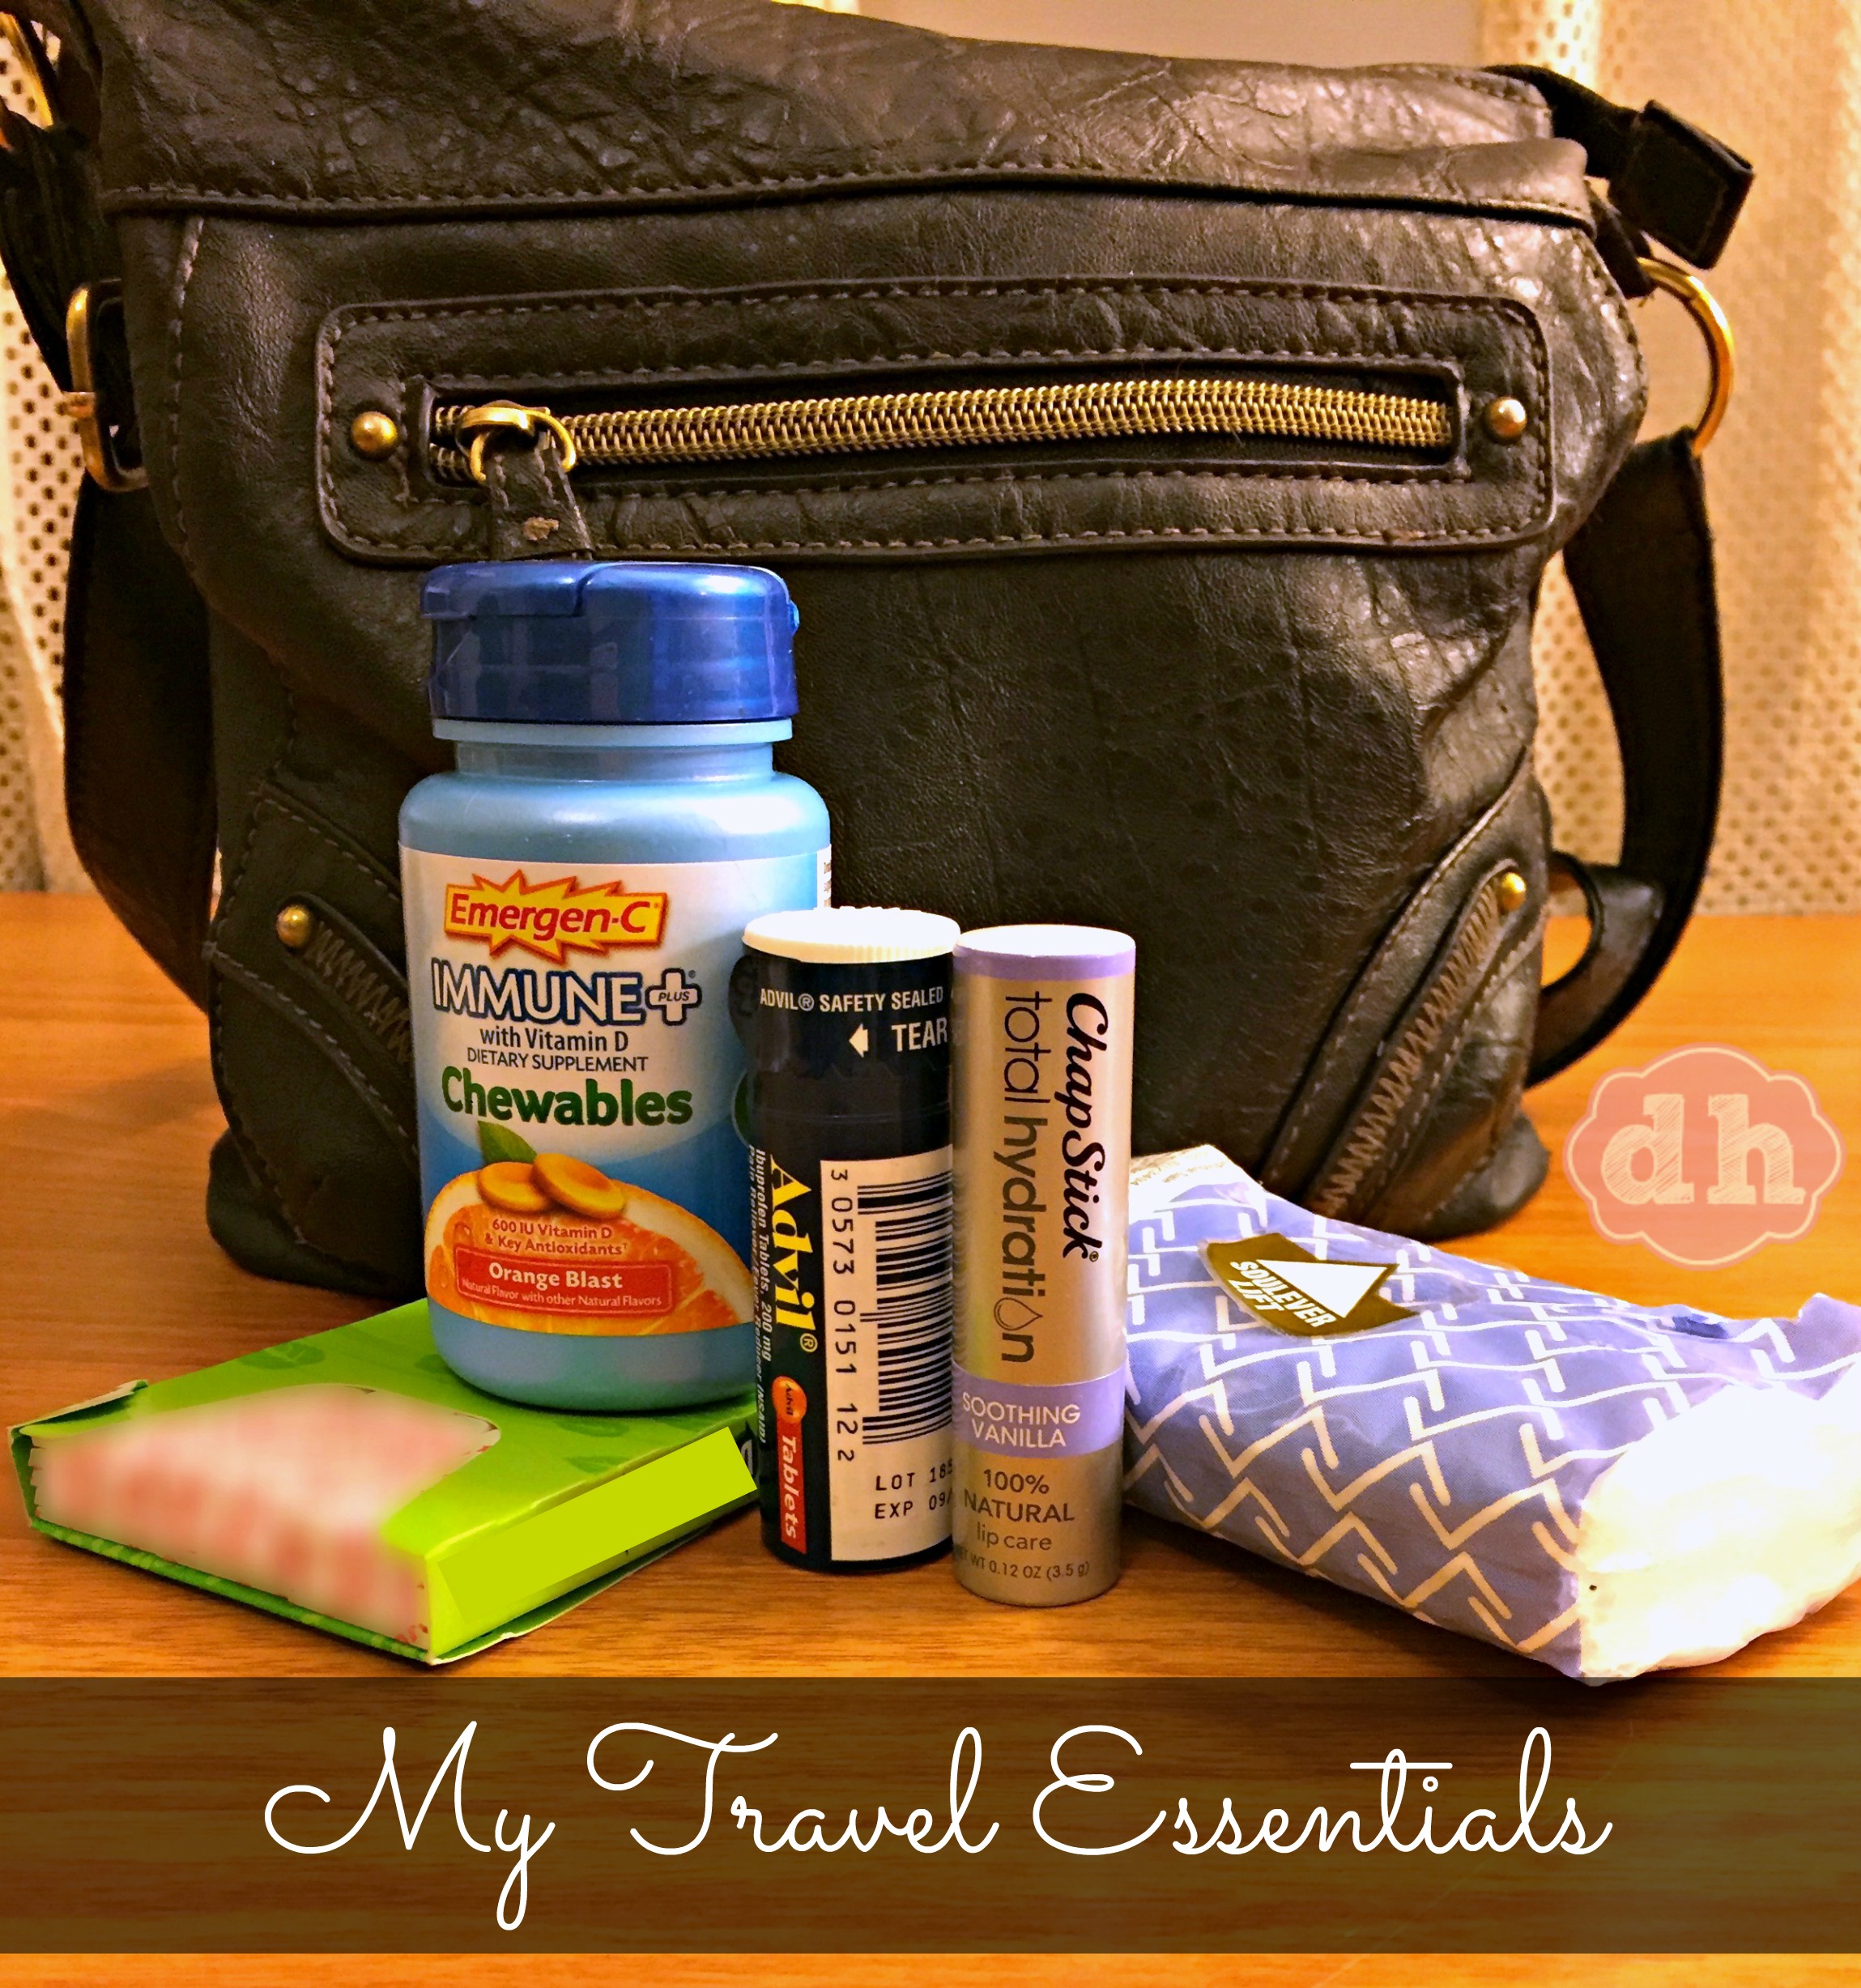 My Travel Essentials #BeHealthyForEveryPartofLife #CollectiveBias #travel